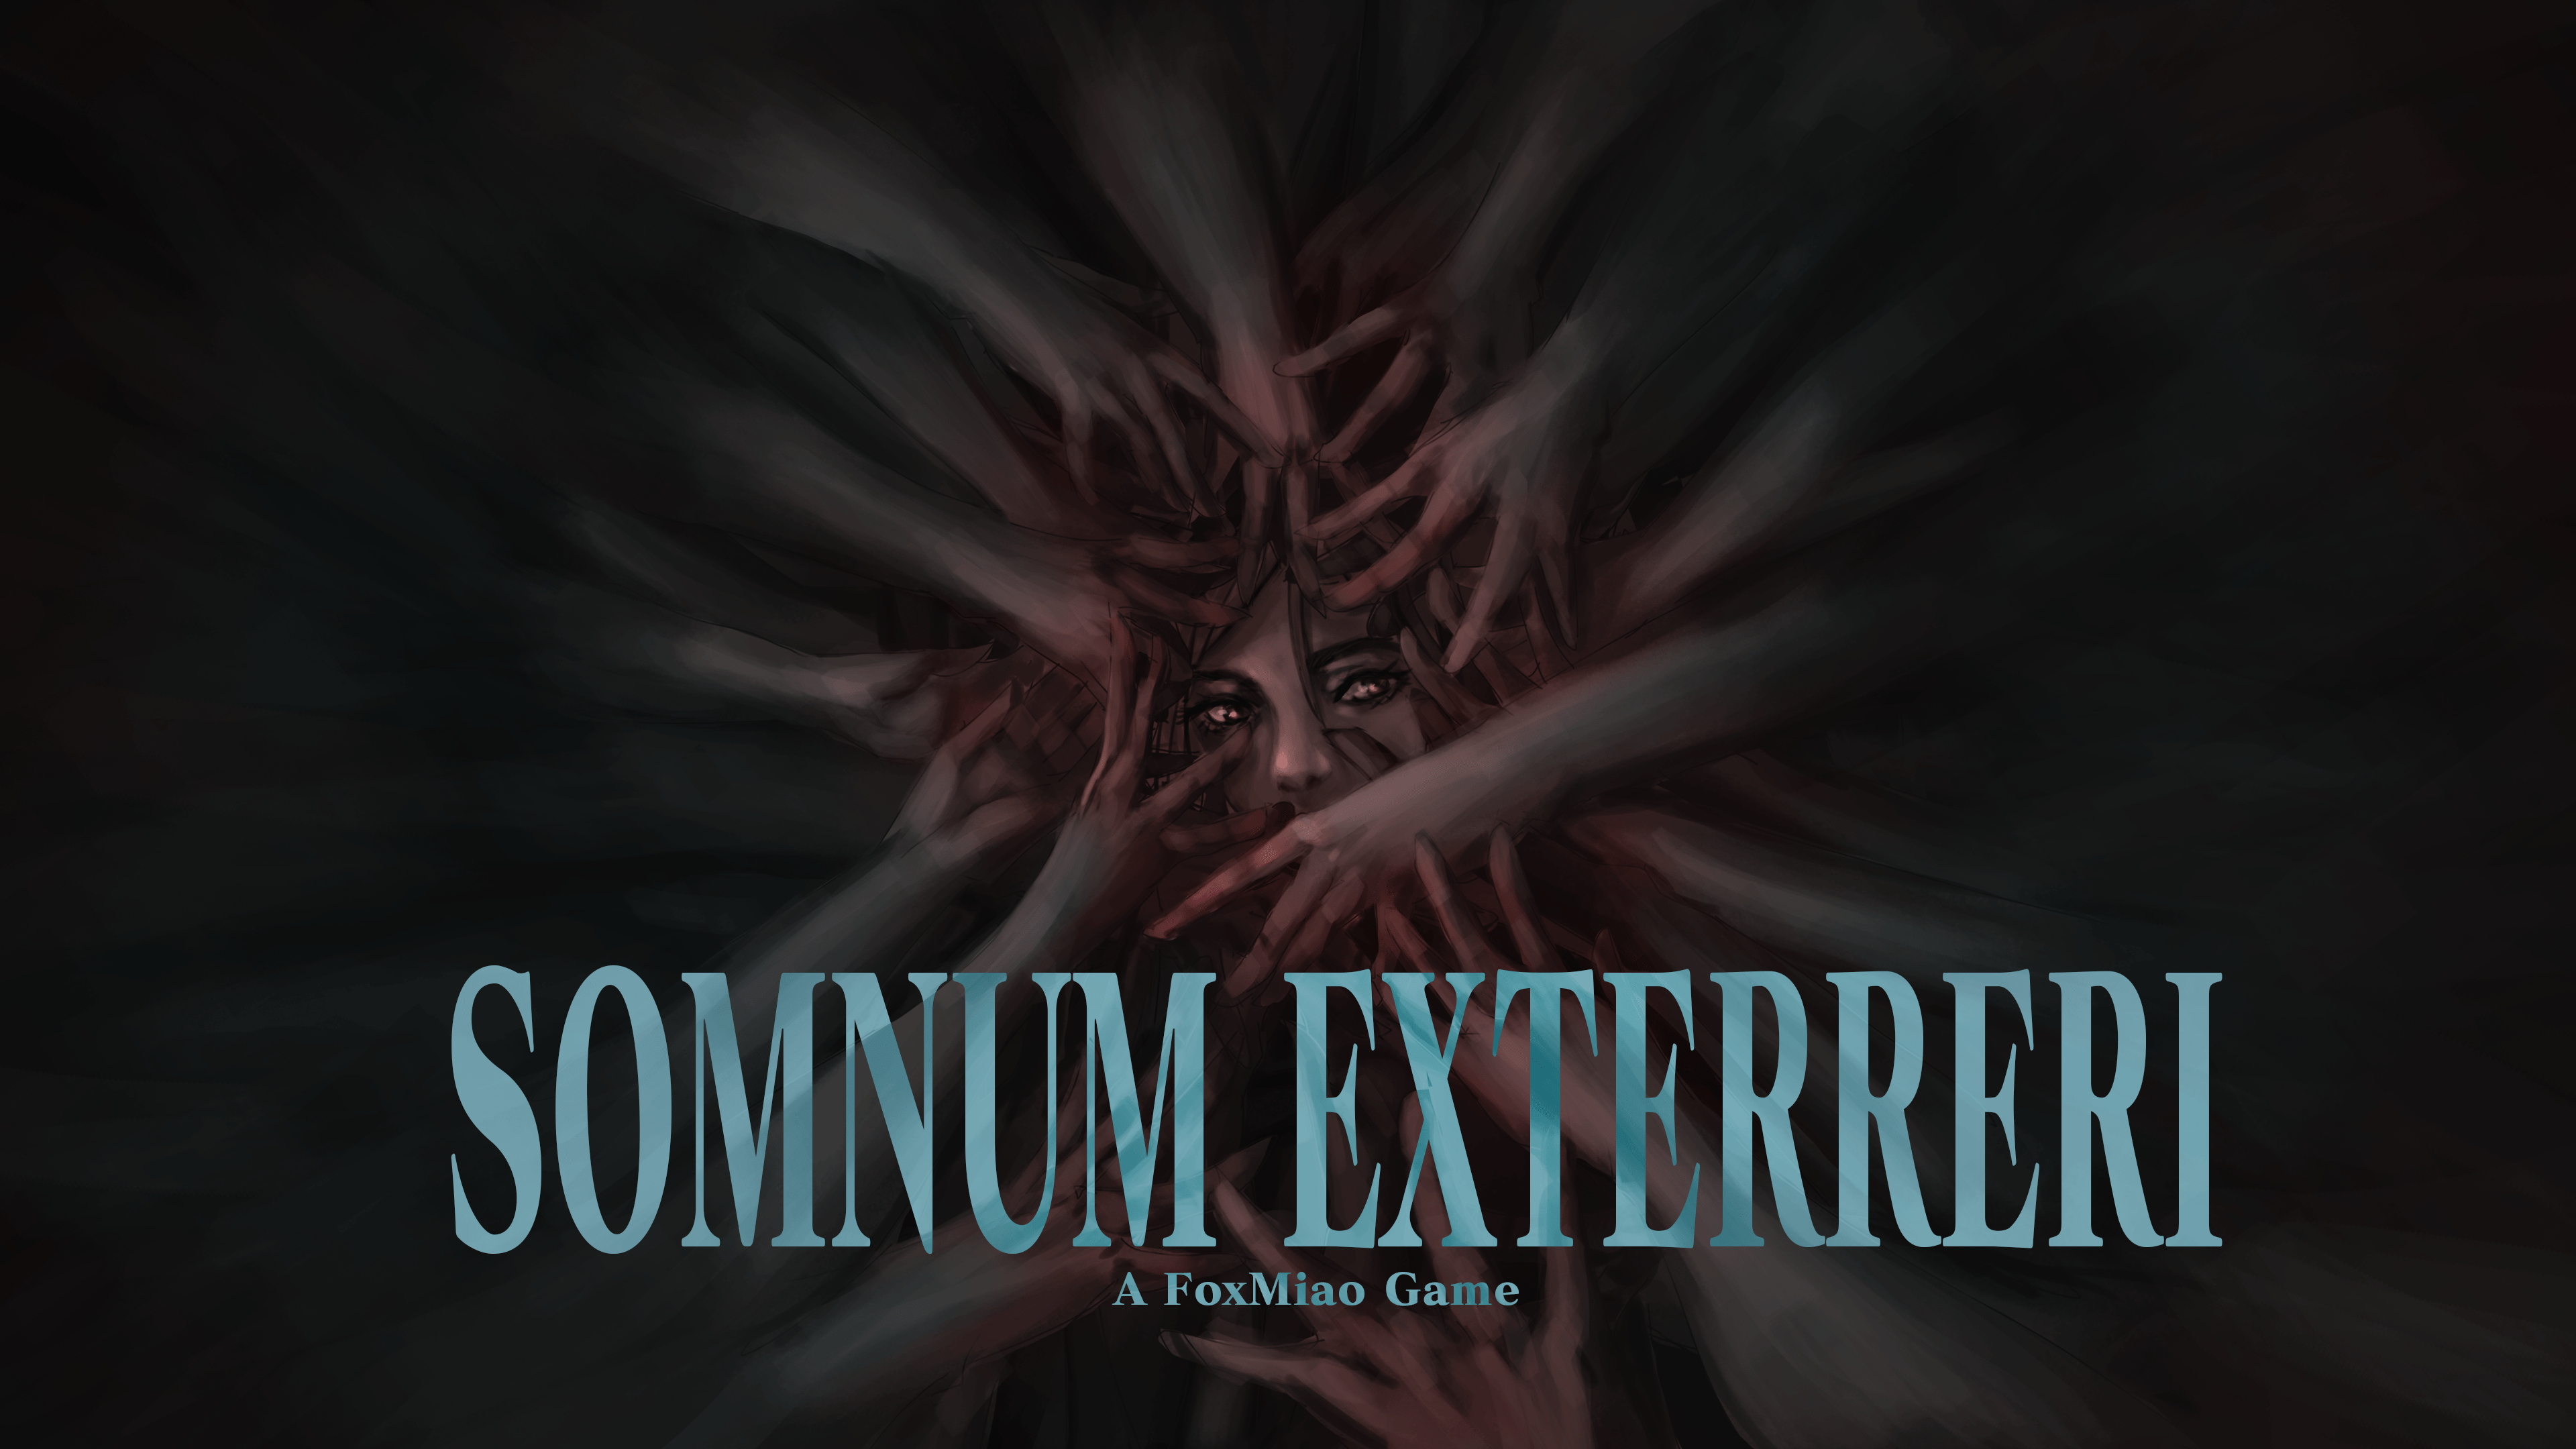 Somnum Exterreri(Nightmare)